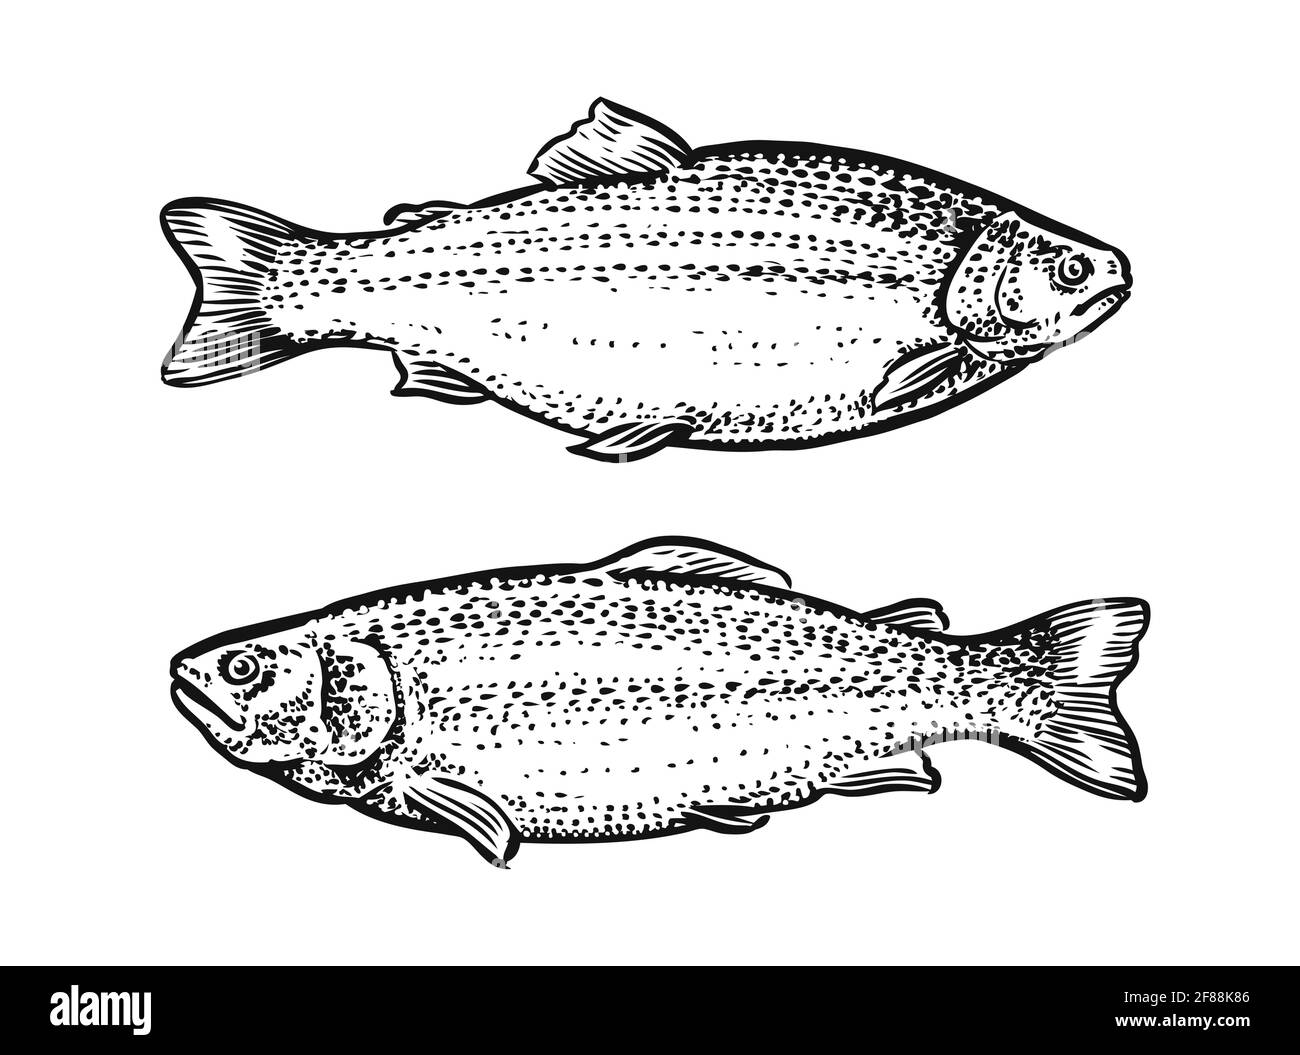 Skizze des Fisches. Handgezeichnete Vektordarstellung von Forellen, Lachs isoliert auf weißem Hintergrund Stock Vektor